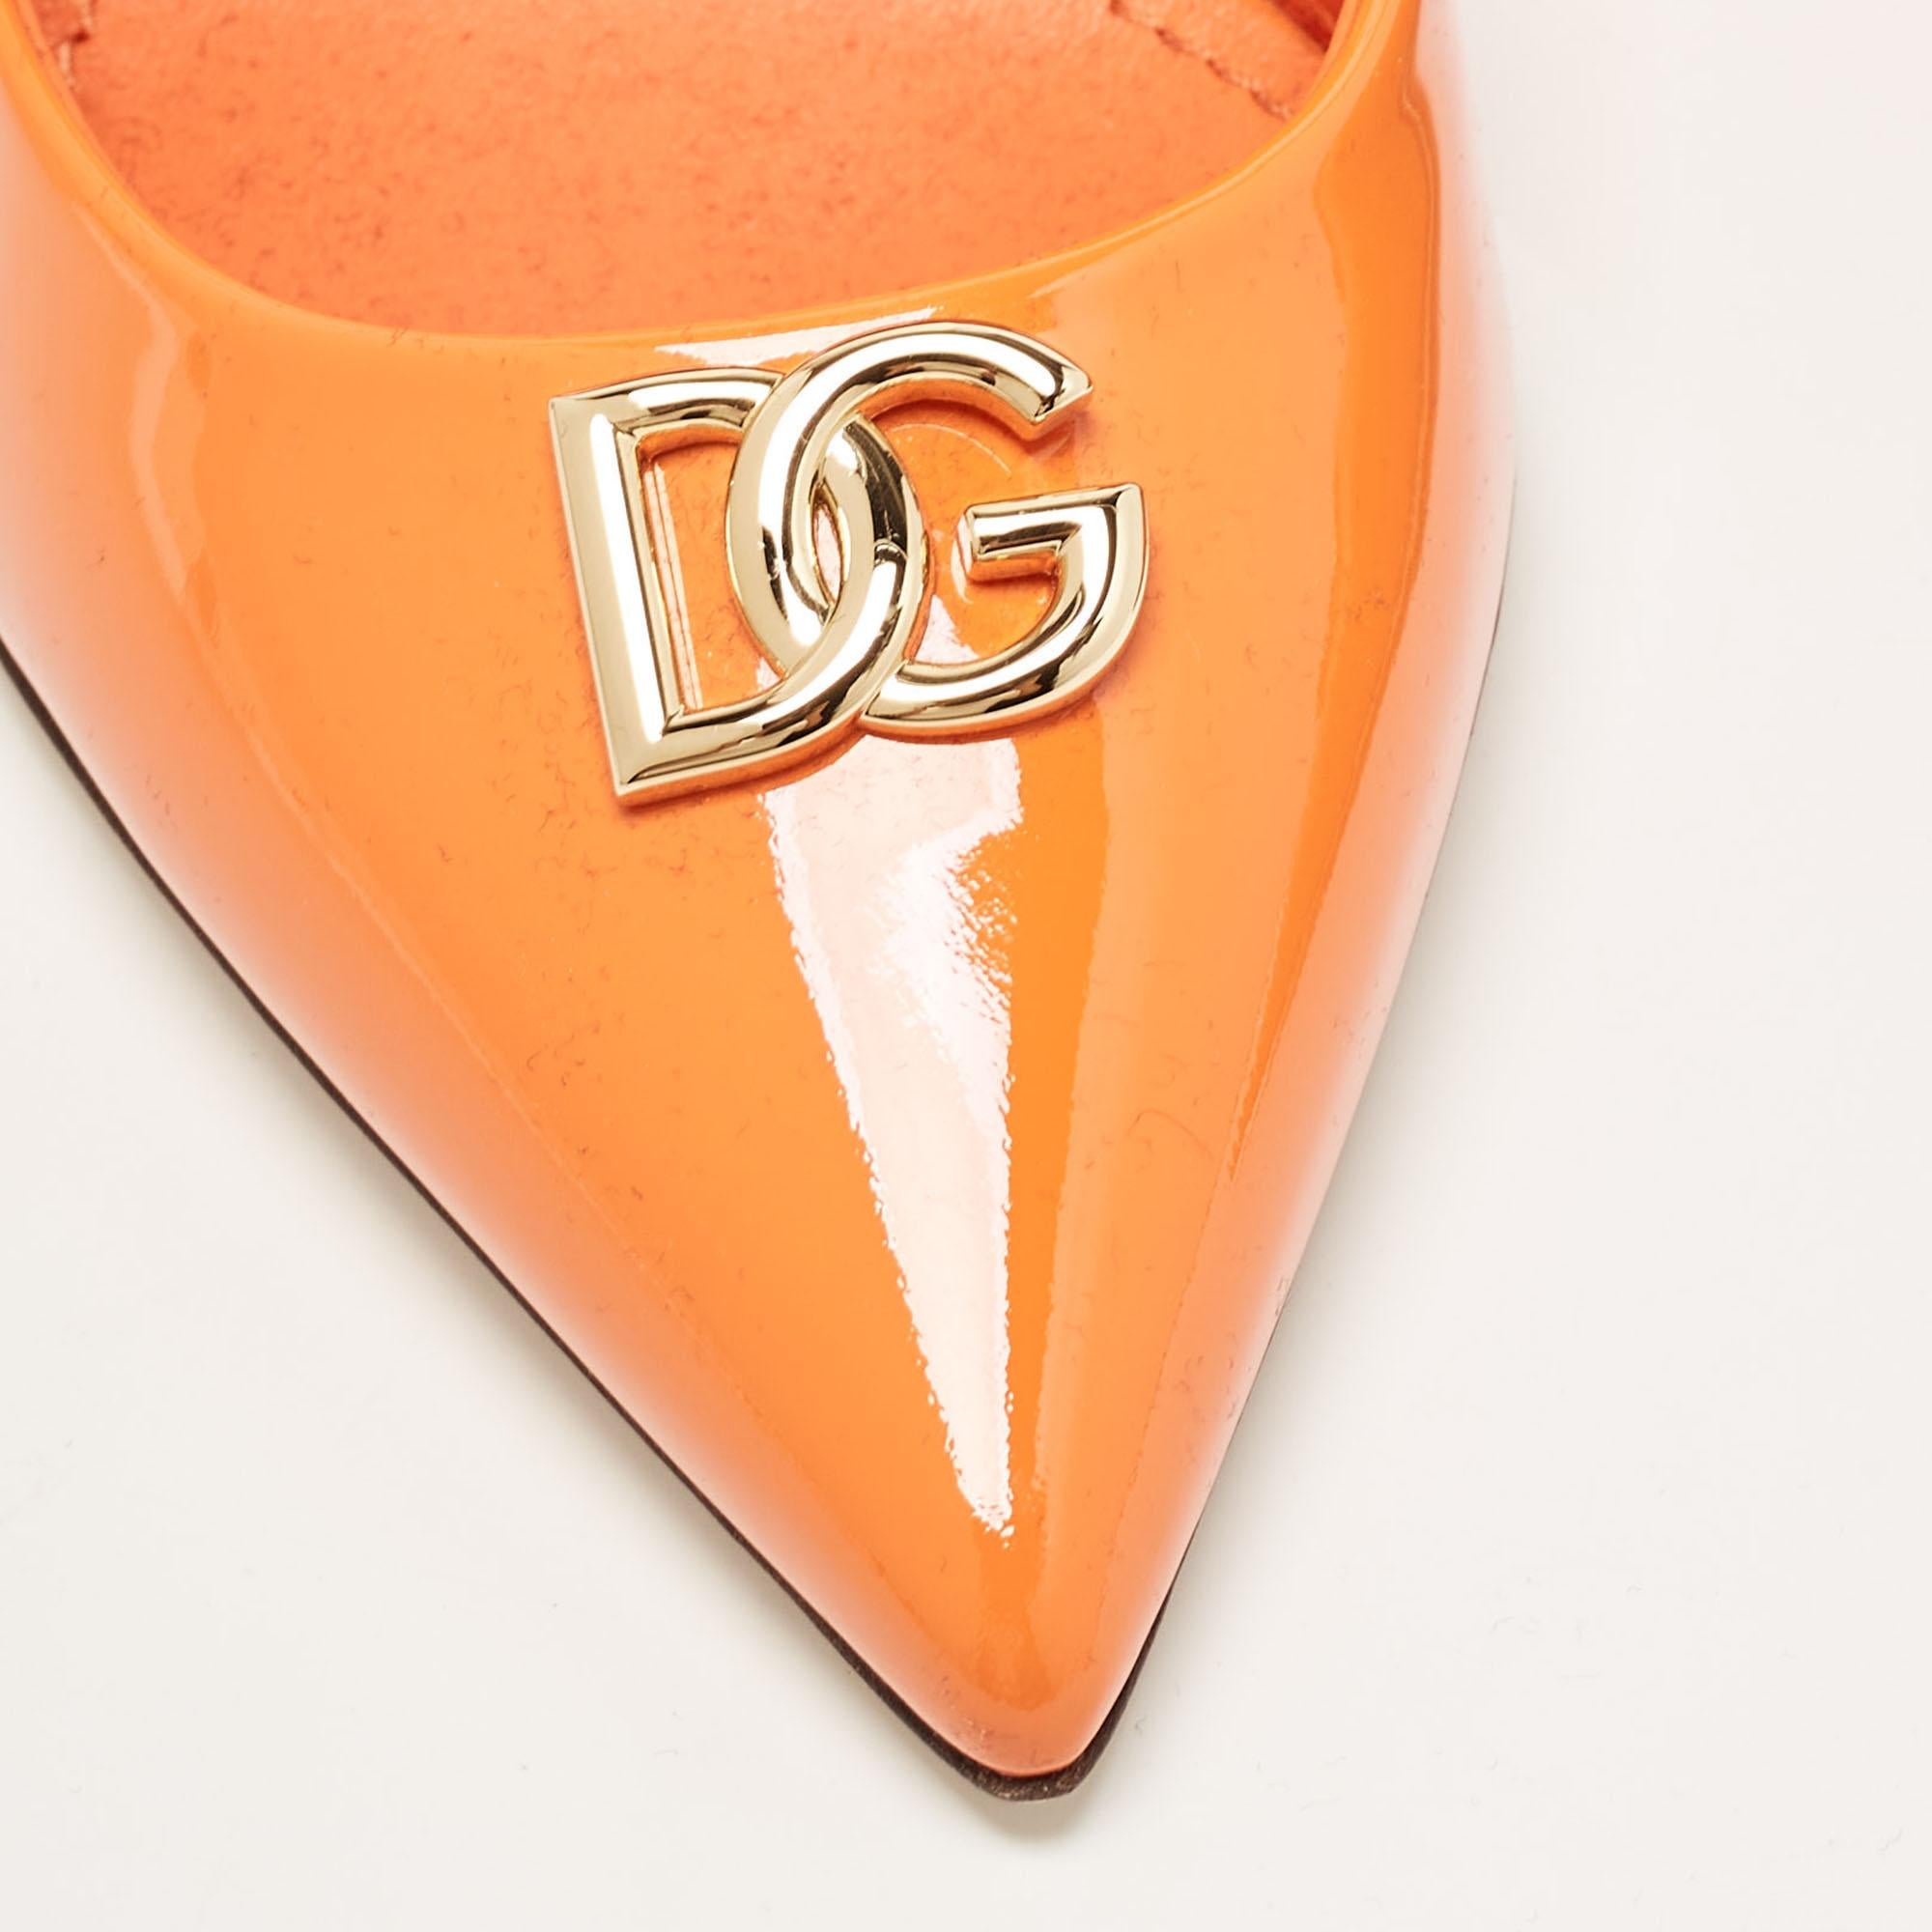  Escarpins Dolce & Gabbana orange verni avec boucle DG, taille 37,5 Pour femmes 